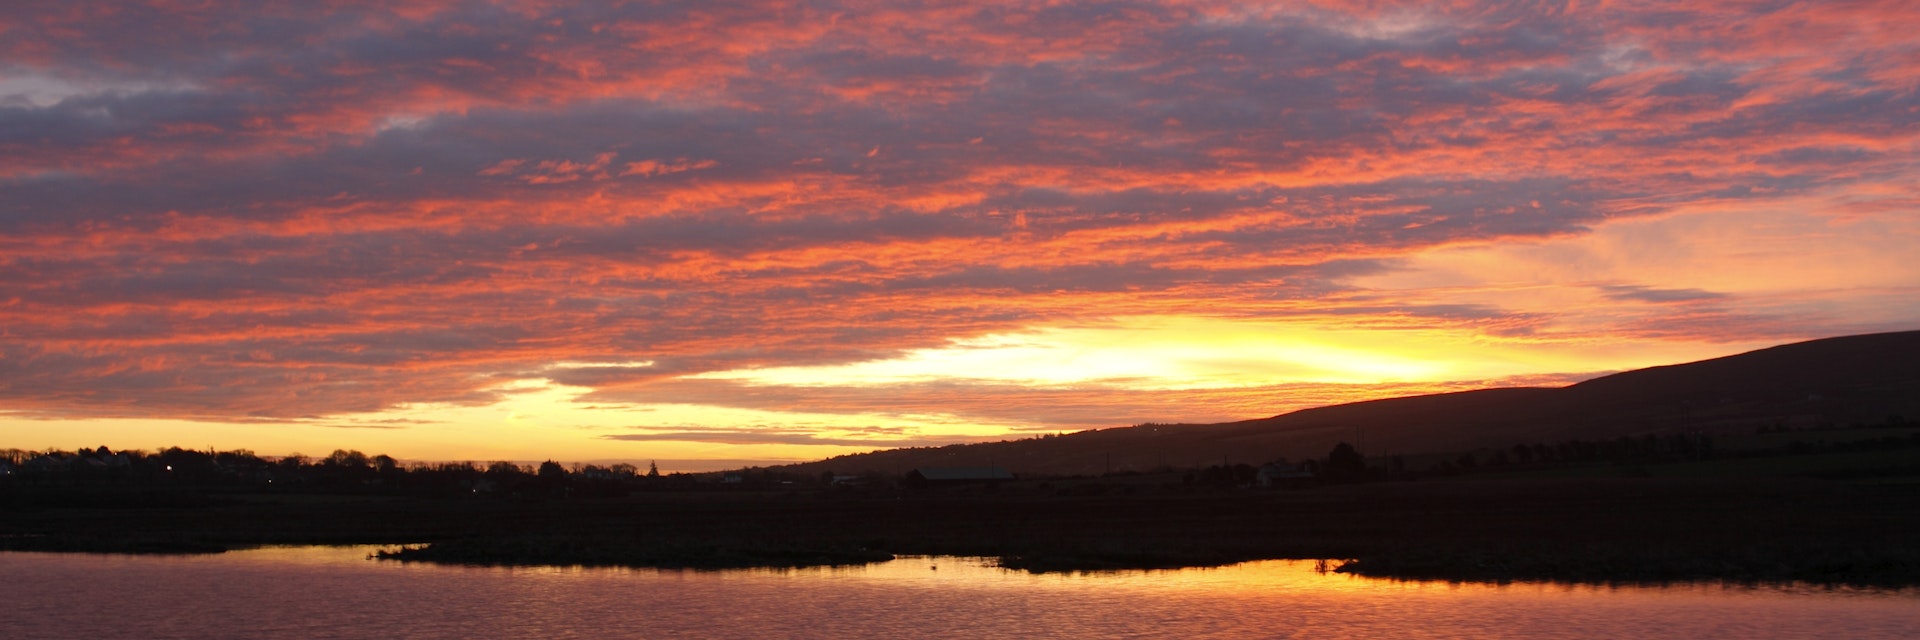 Sunrise over Tralee wetlands.